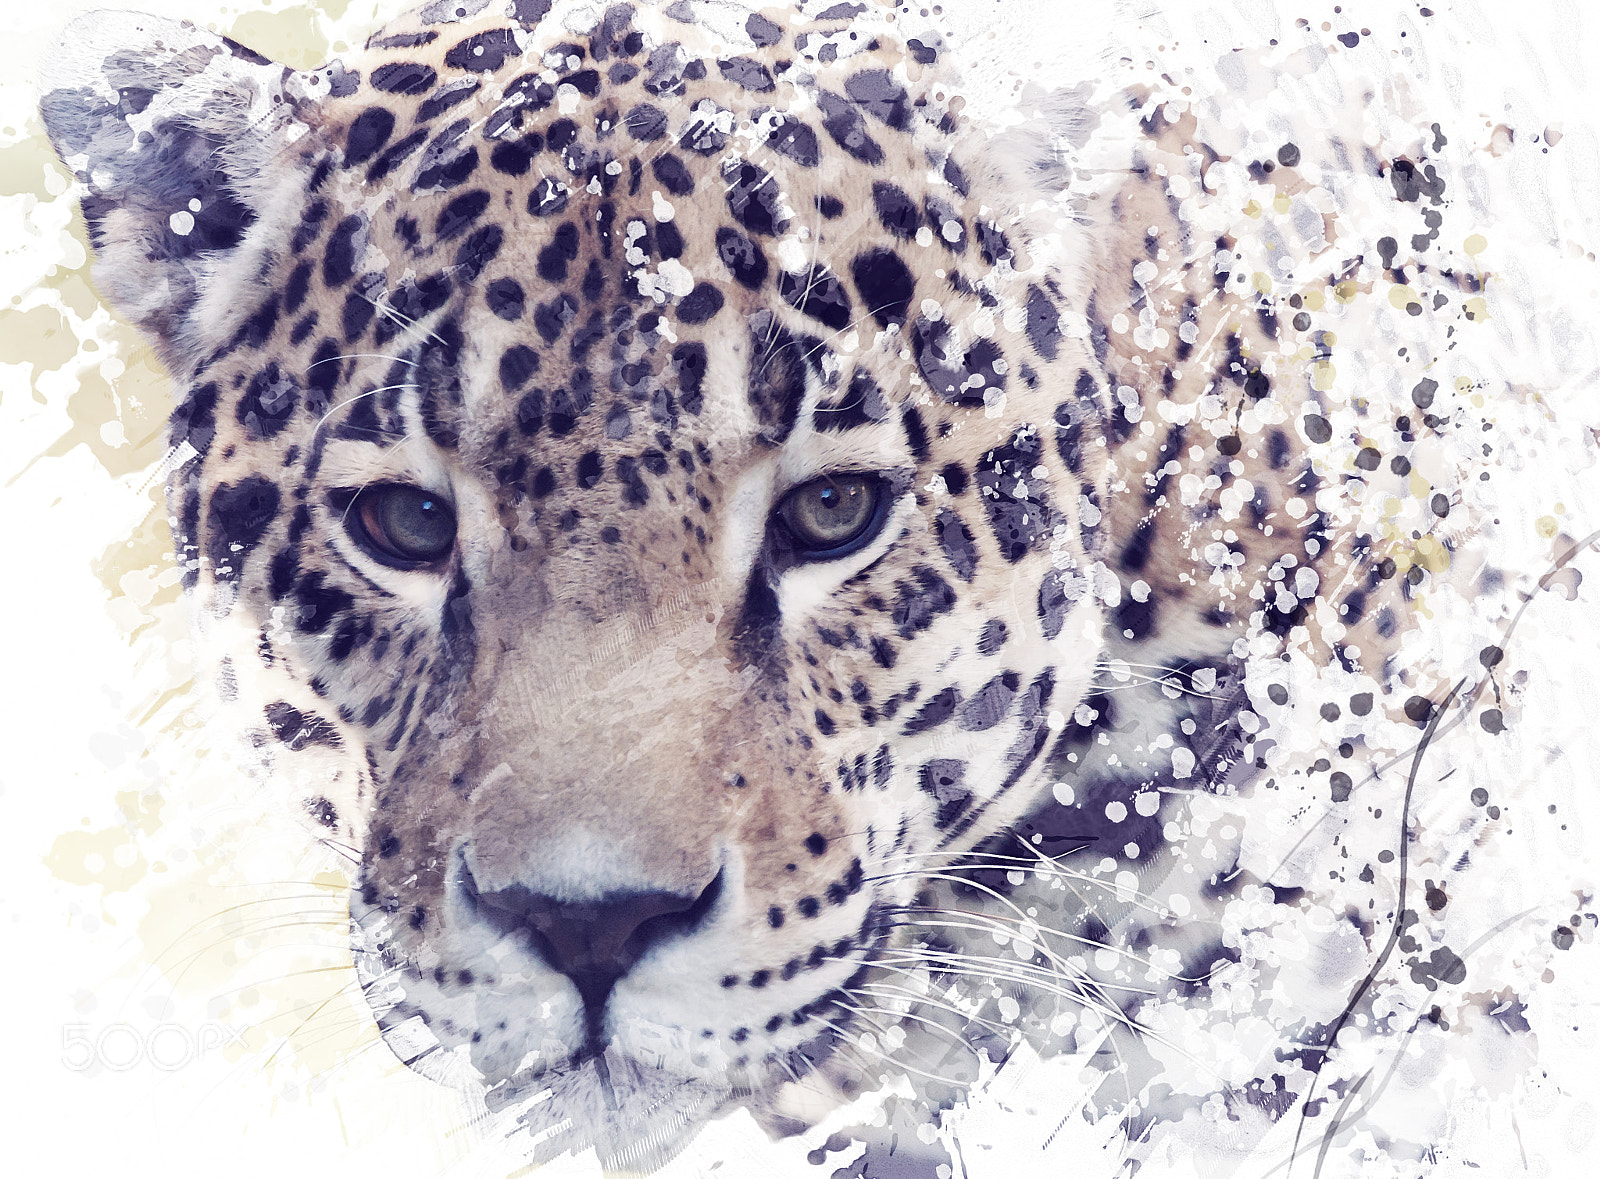 Nikon D800 sample photo. Leopard portrait watercolor photography